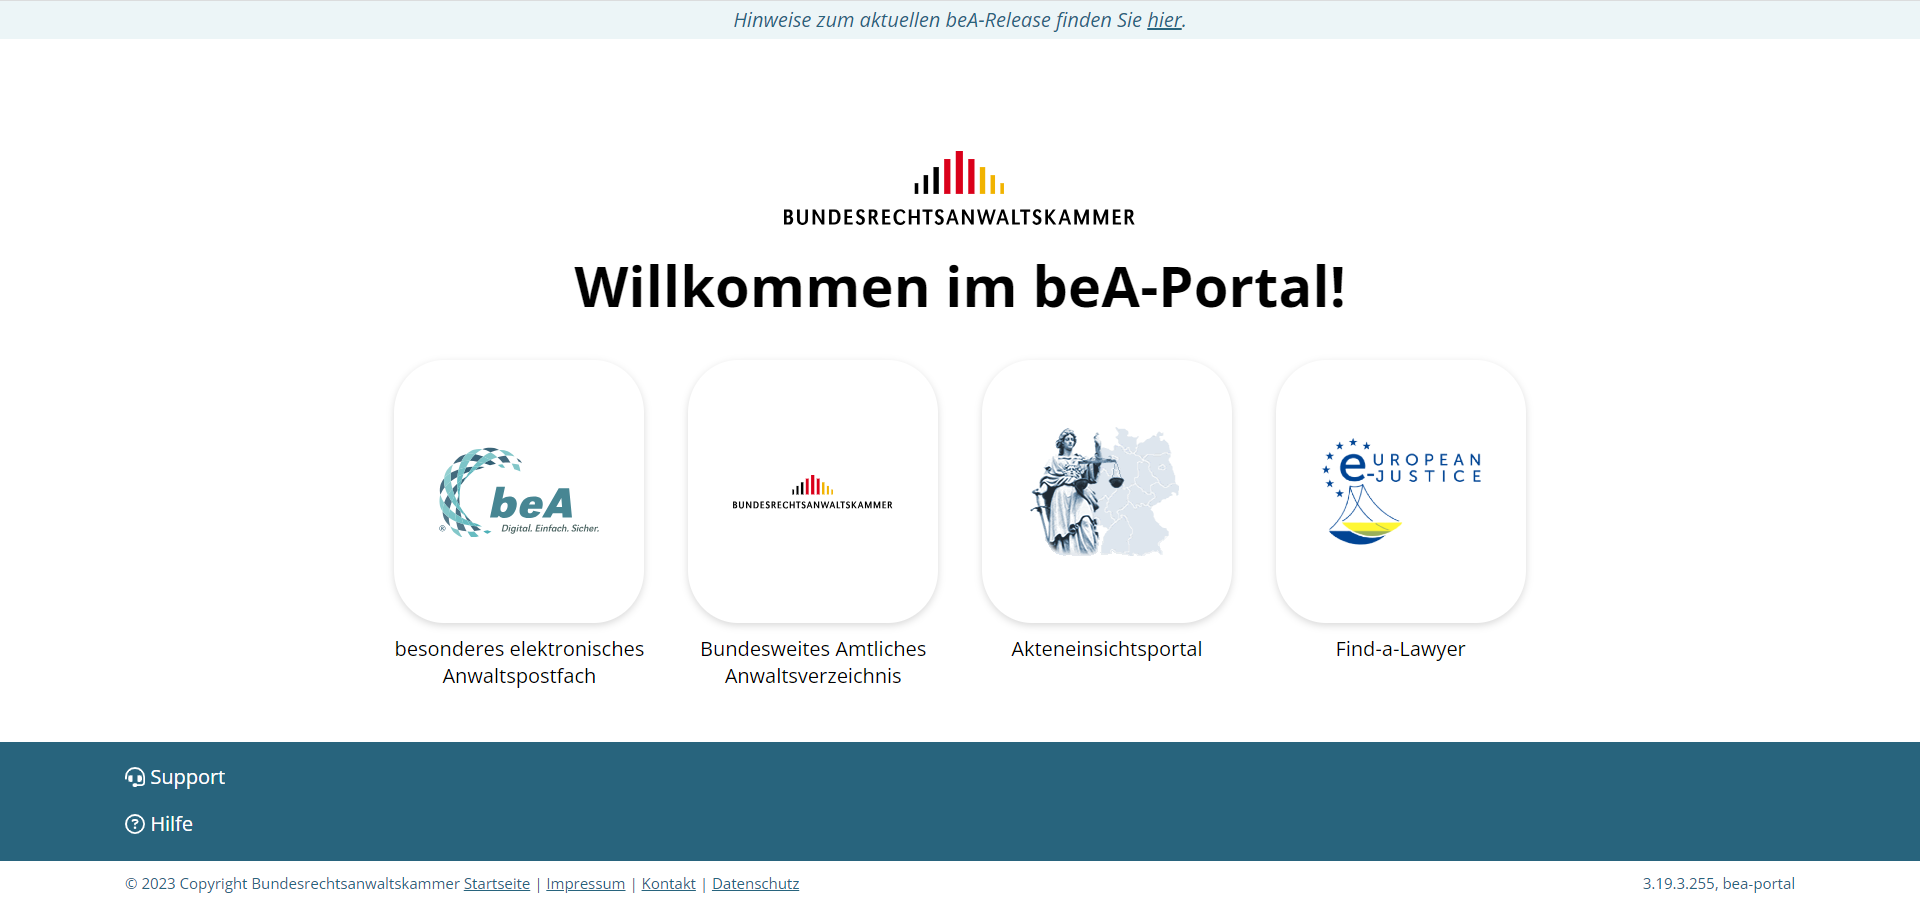 Ansicht des neuen beA-Portal mit Symbolen zu verlinkten Aufrufmöglichkeiten